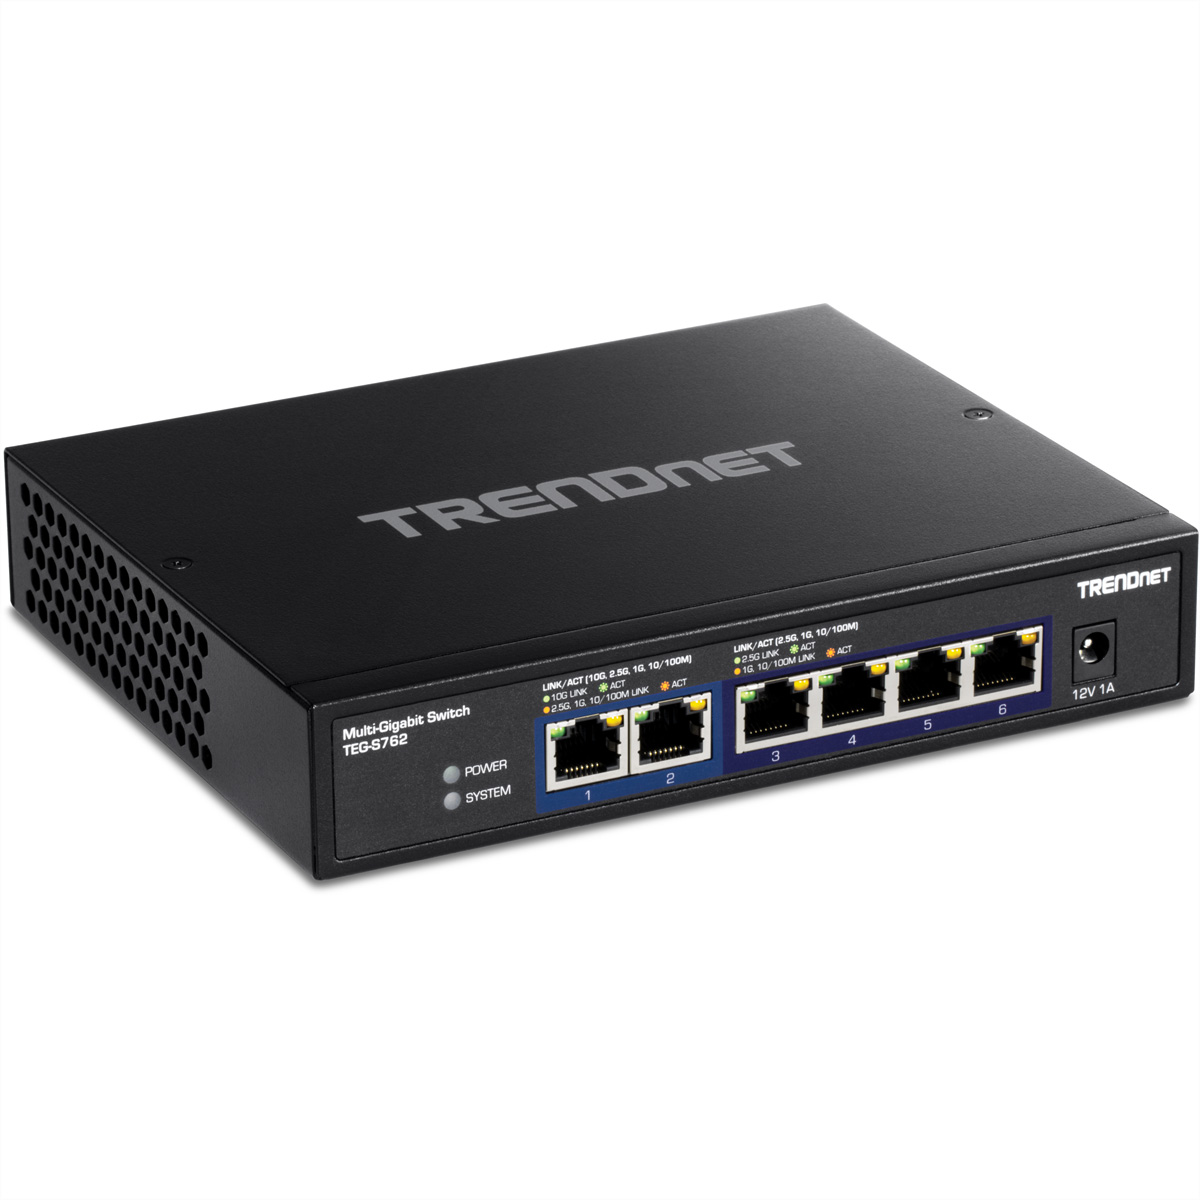 TEG-S762 6-Port TRENDNET Gigabit Ethernet Switch 10G Switch